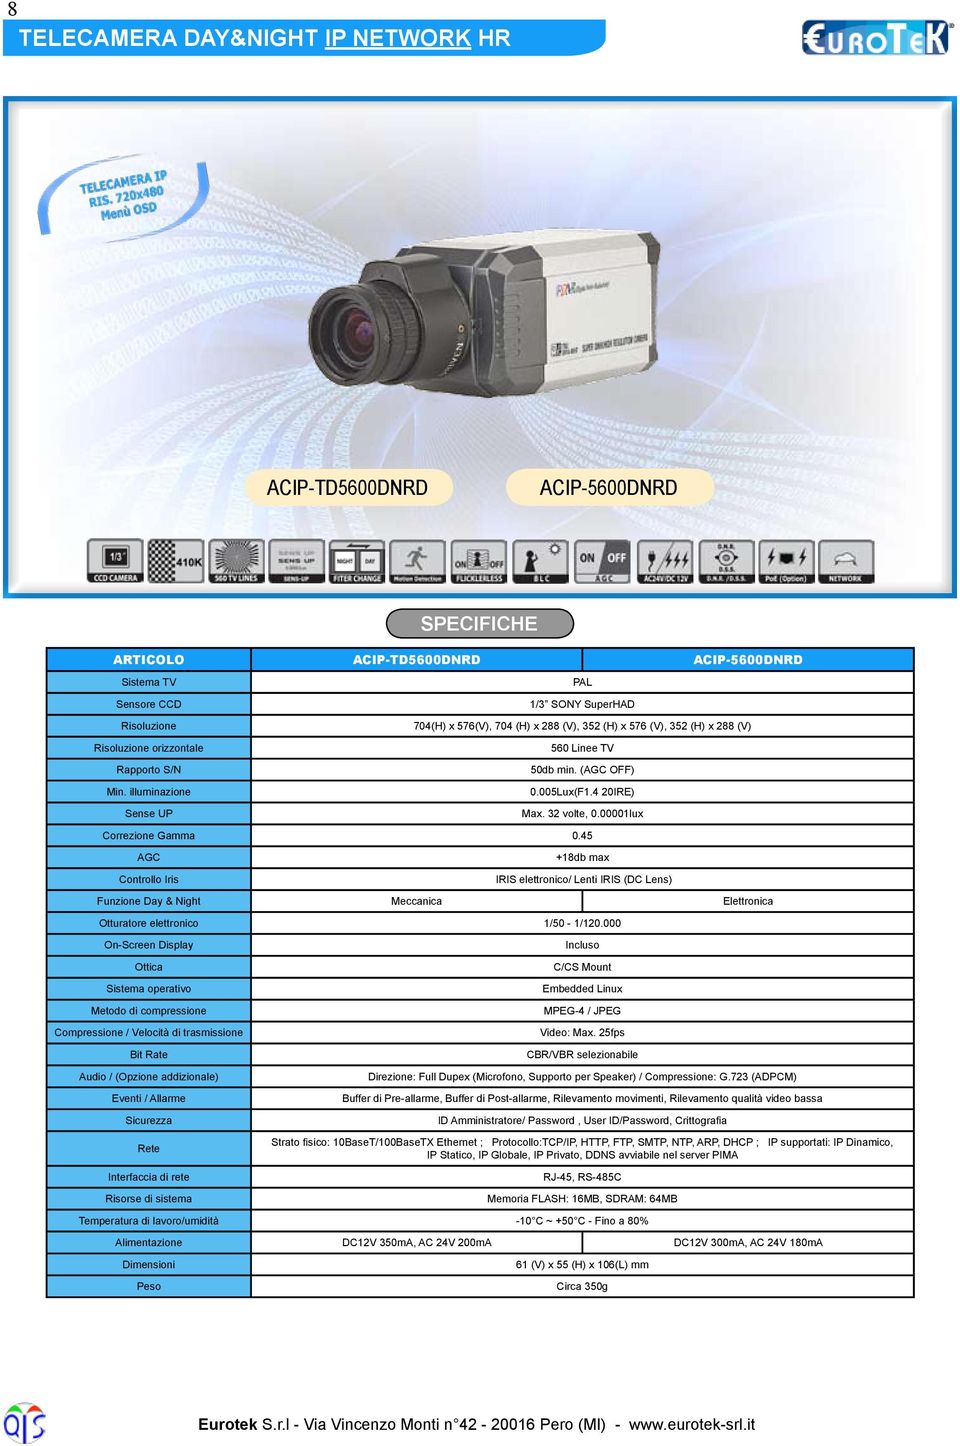 00001lux Correzione Gamma 0.45 AGC +18db max Controllo Iris IRIS elettronico/ Lenti IRIS (DC Lens) Funzione Day & Night Meccanica Elettronica Otturatore elettronico 1/50-1/120.